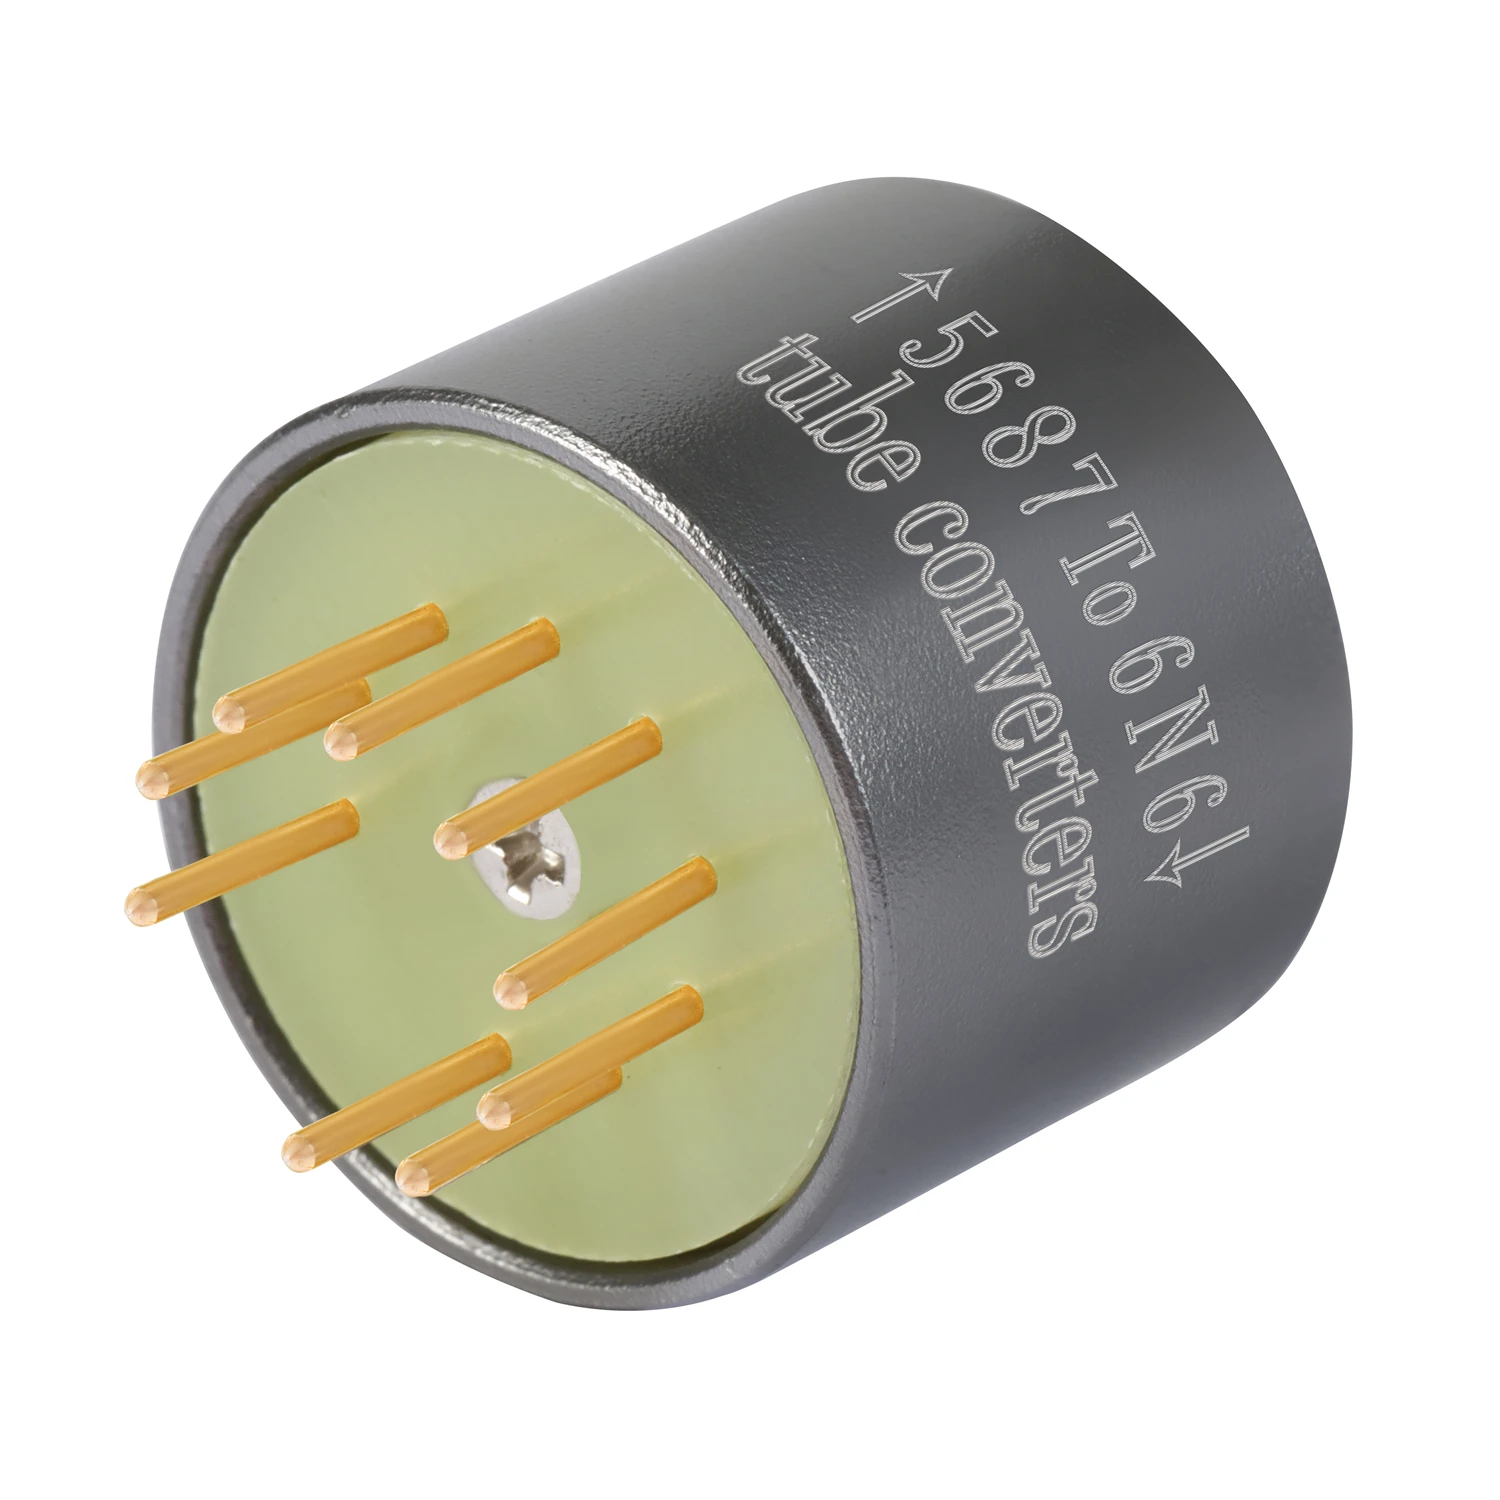 5687 To 6N6 6N2 ECC88 6922 6DJ8 ECC85 6N11 Vacuum Tube Amplifier Convert Socket Adapter